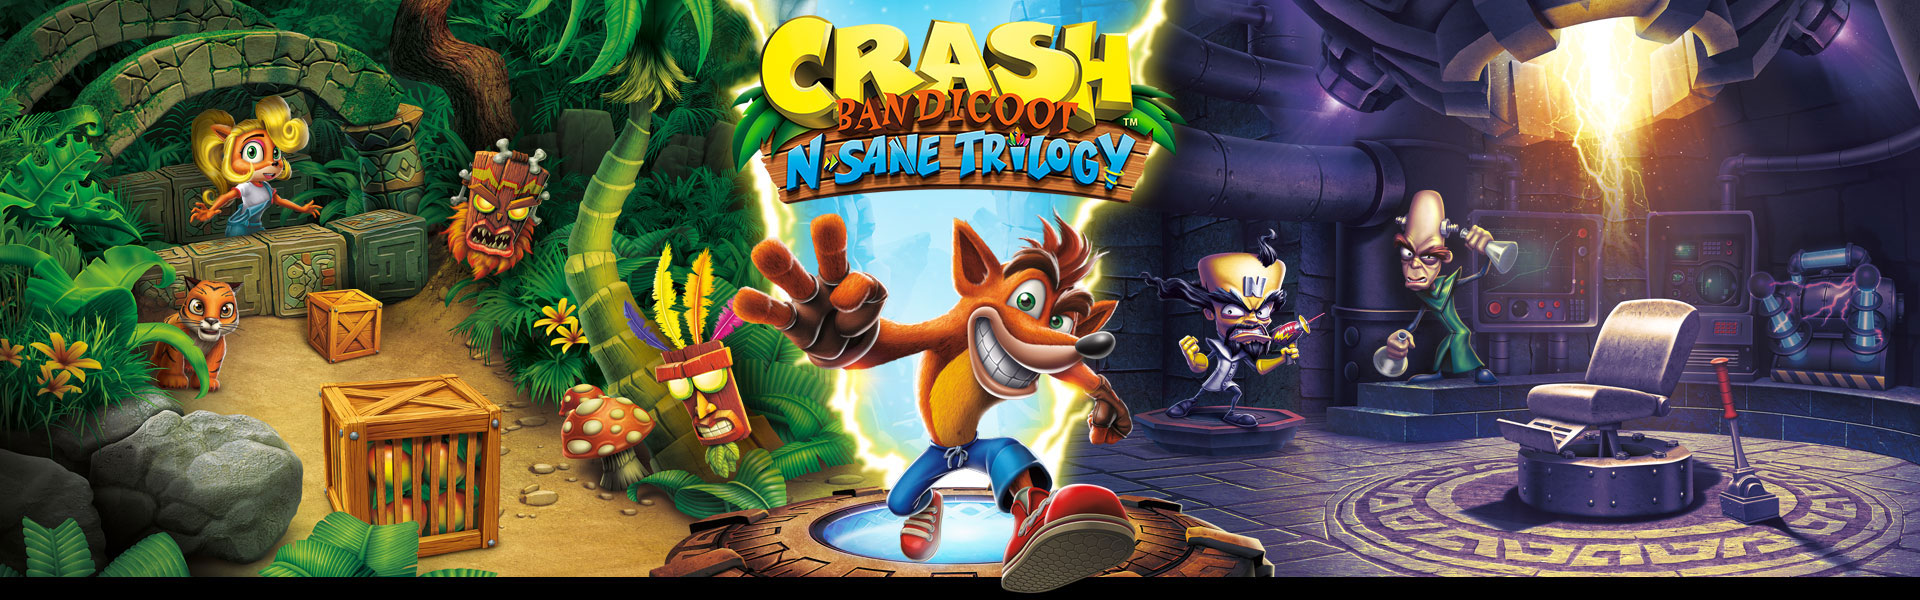 Crash Bandicoot N. Sane Trilogy - Nintendo Switch : Target, smash crash  meaning 